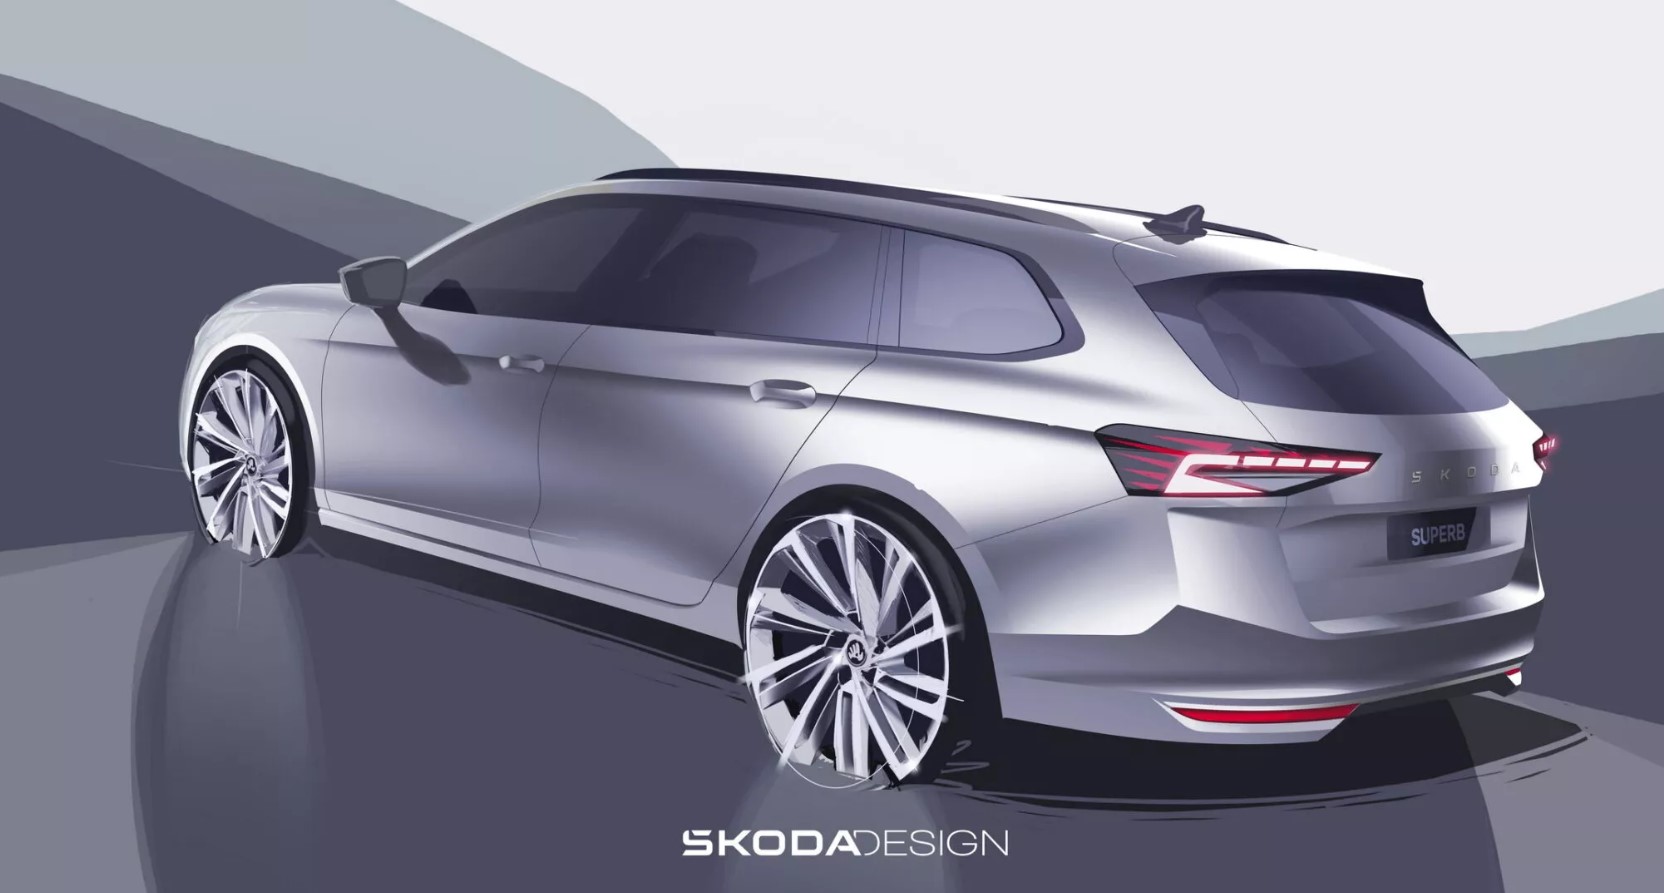 2024 Skoda Superb'in tasarımına ilişkin yeni çizimler paylaşıldı